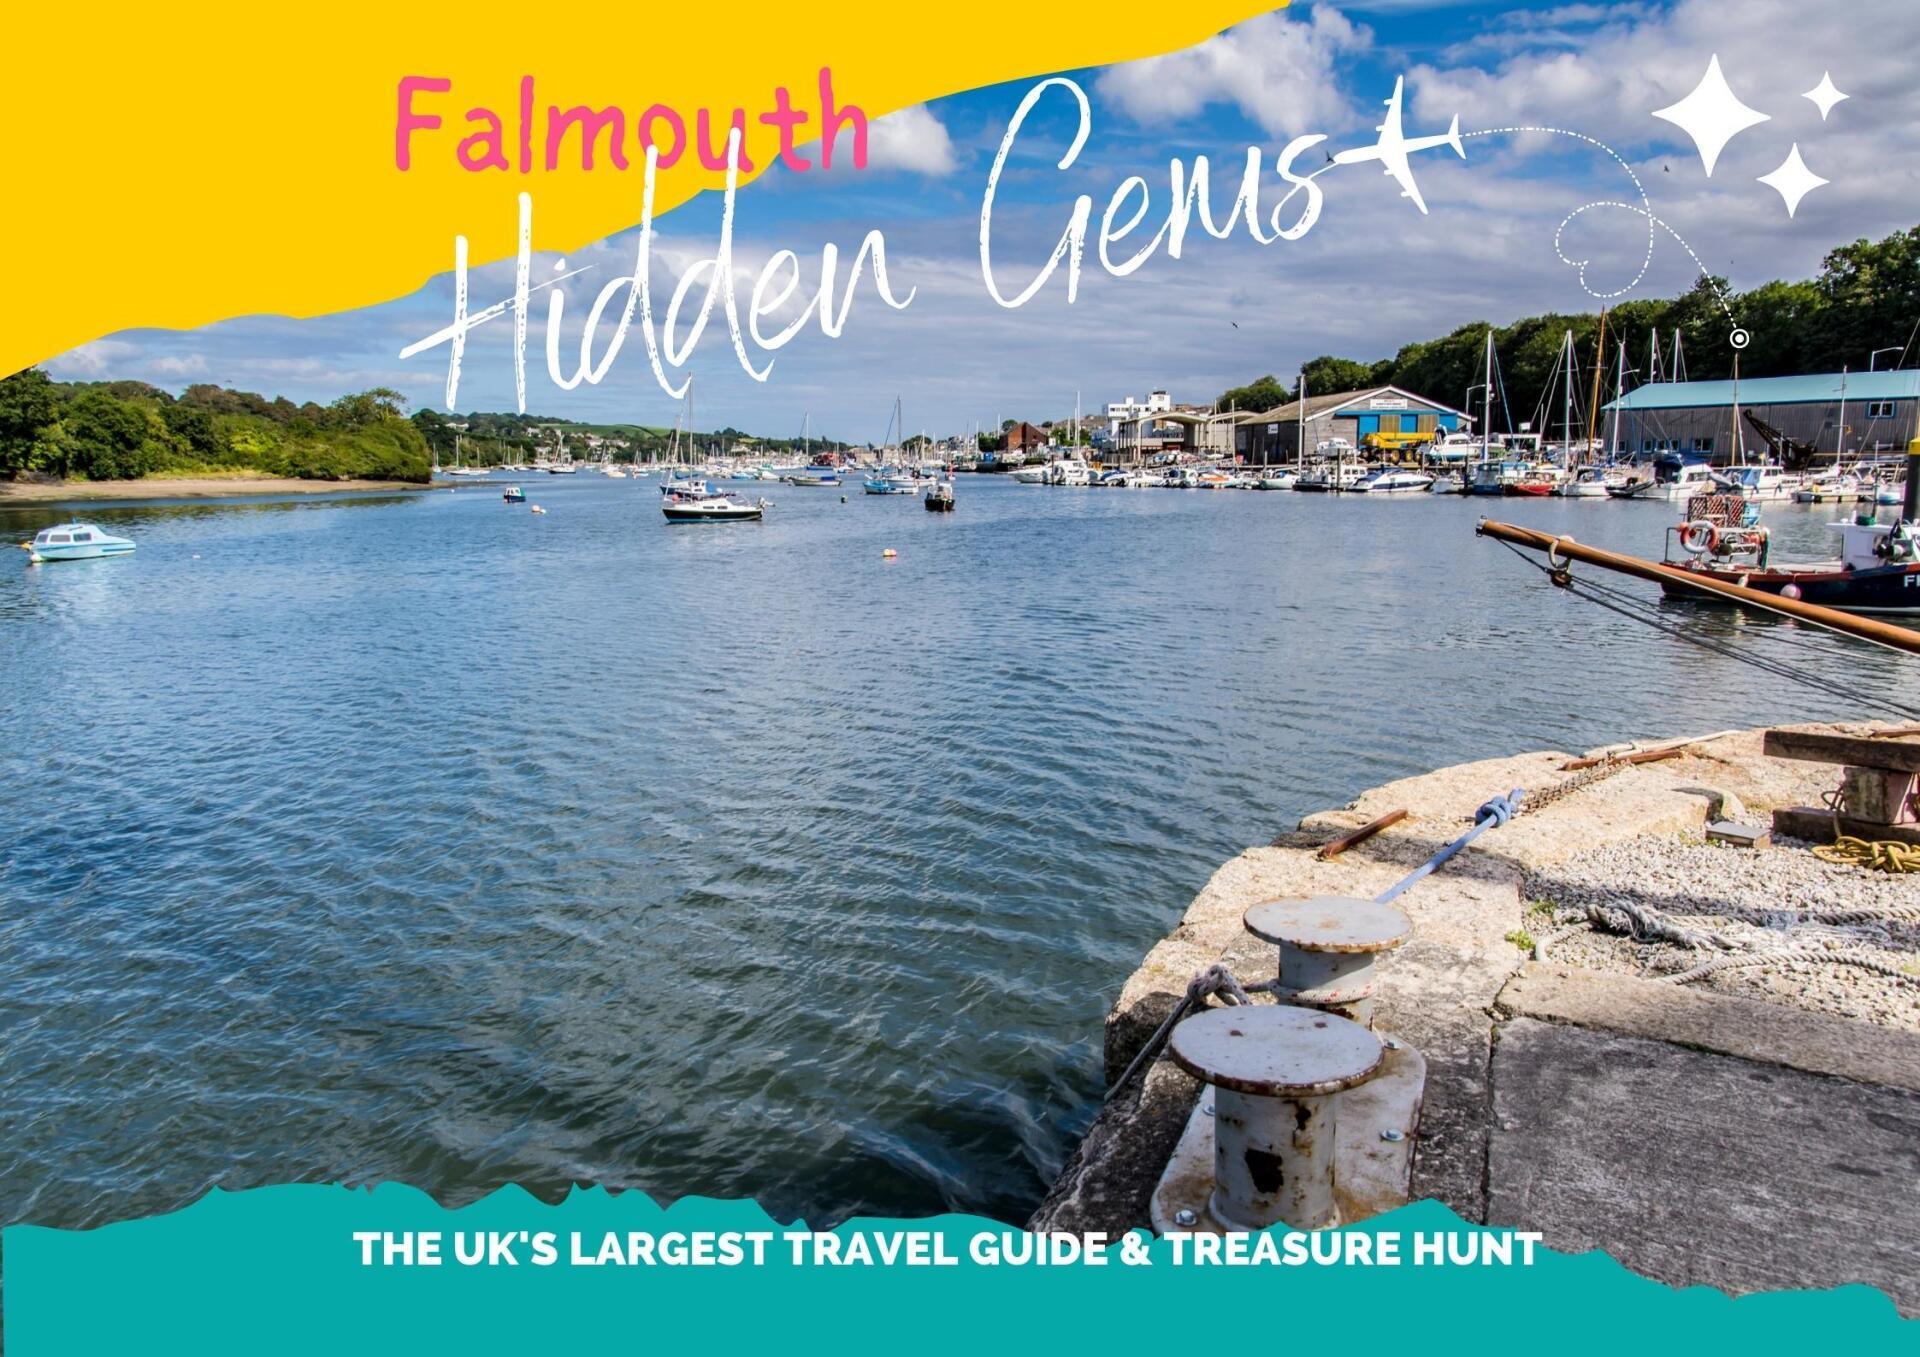 Falmouth Hidden Gems